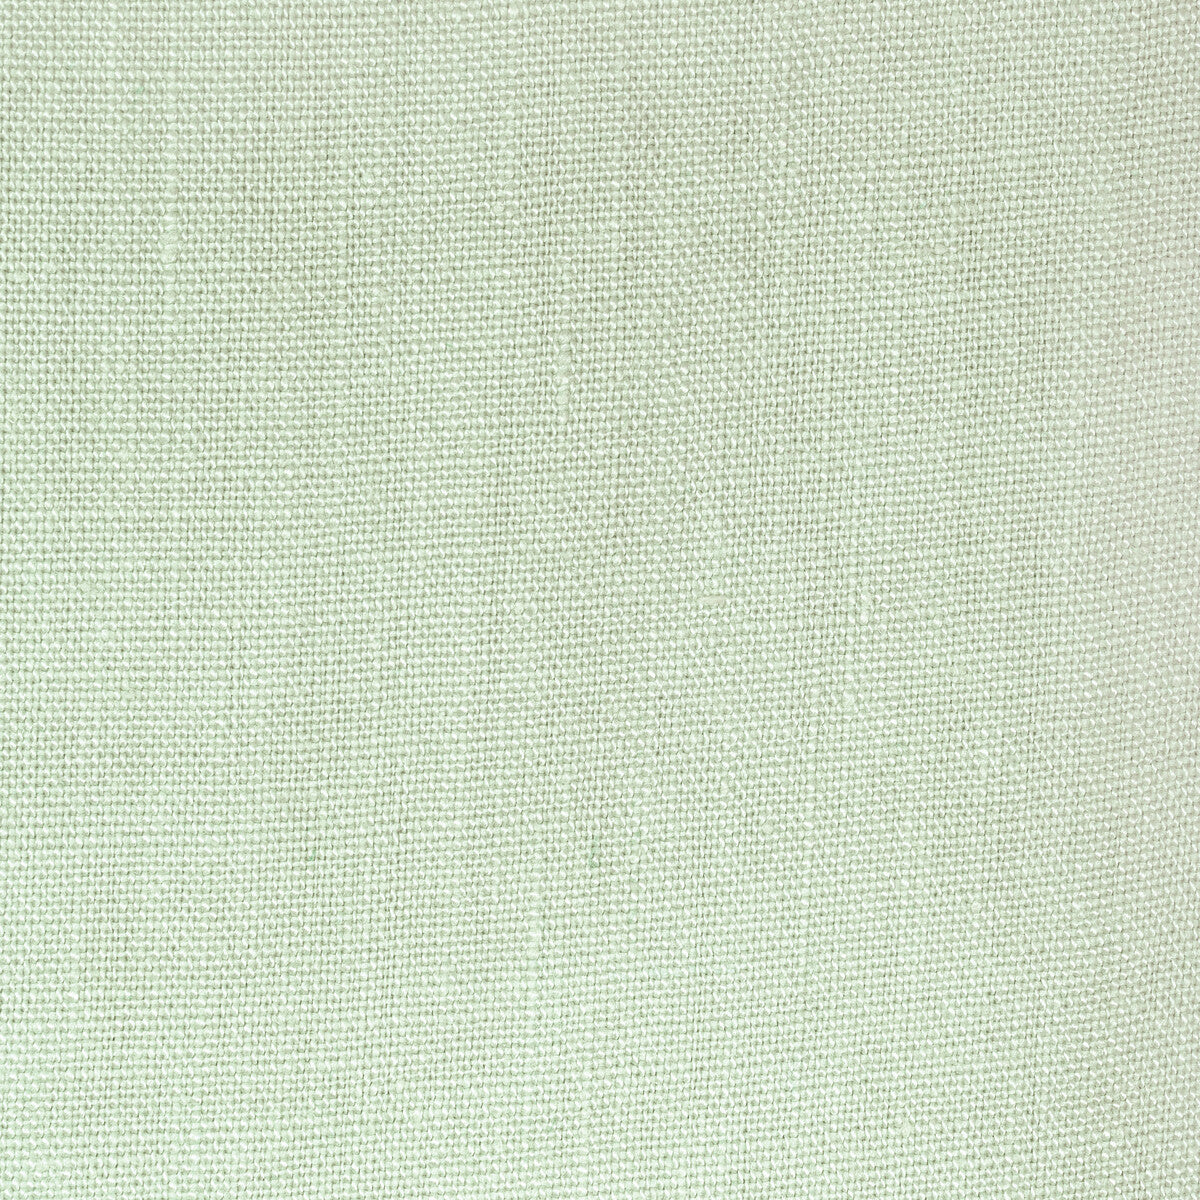 Kravet Basics fabric in 36332-123 color - pattern 36332.123.0 - by Kravet Basics